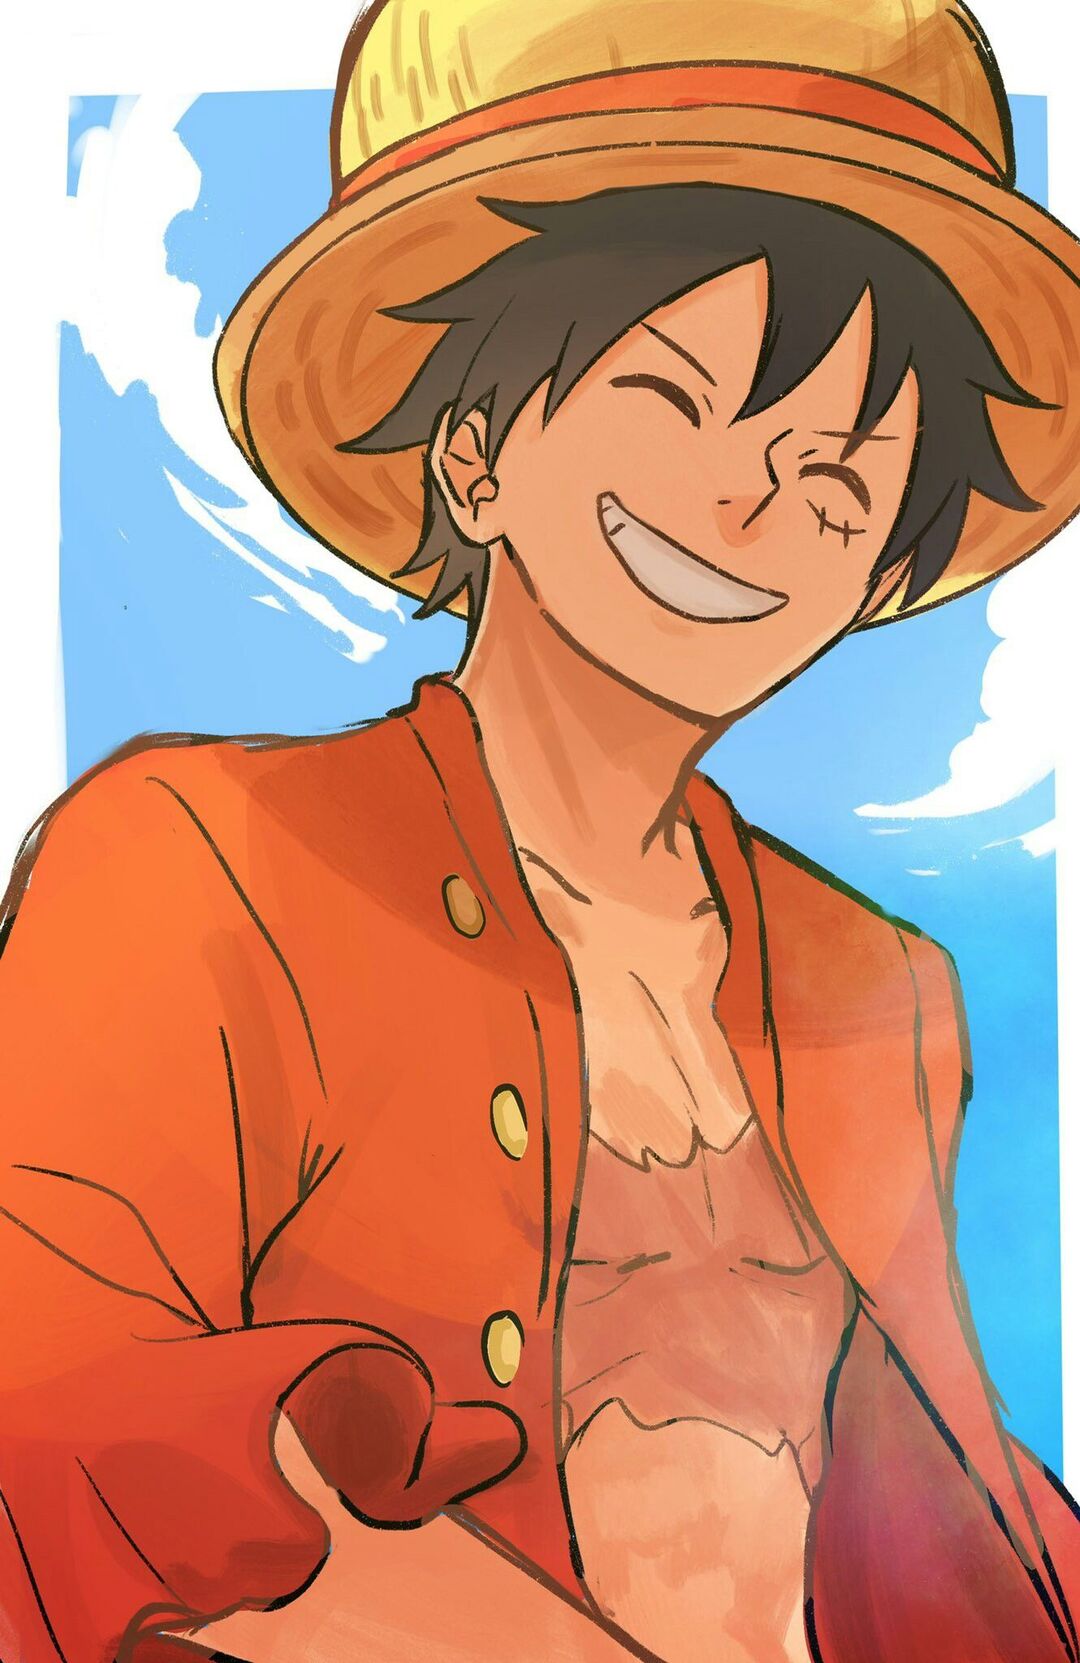 Bạn là fan của bộ truyện tranh One Piece và yêu thích nhân vật Luffy Mũ Rơm? Hãy cùng xem ngay hình ảnh đầy nghệ thuật của Luffy Mũ Rơm để ngắm nhìn những tạo hình và màu sắc tuyệt đẹp của anh chàng này nhé!